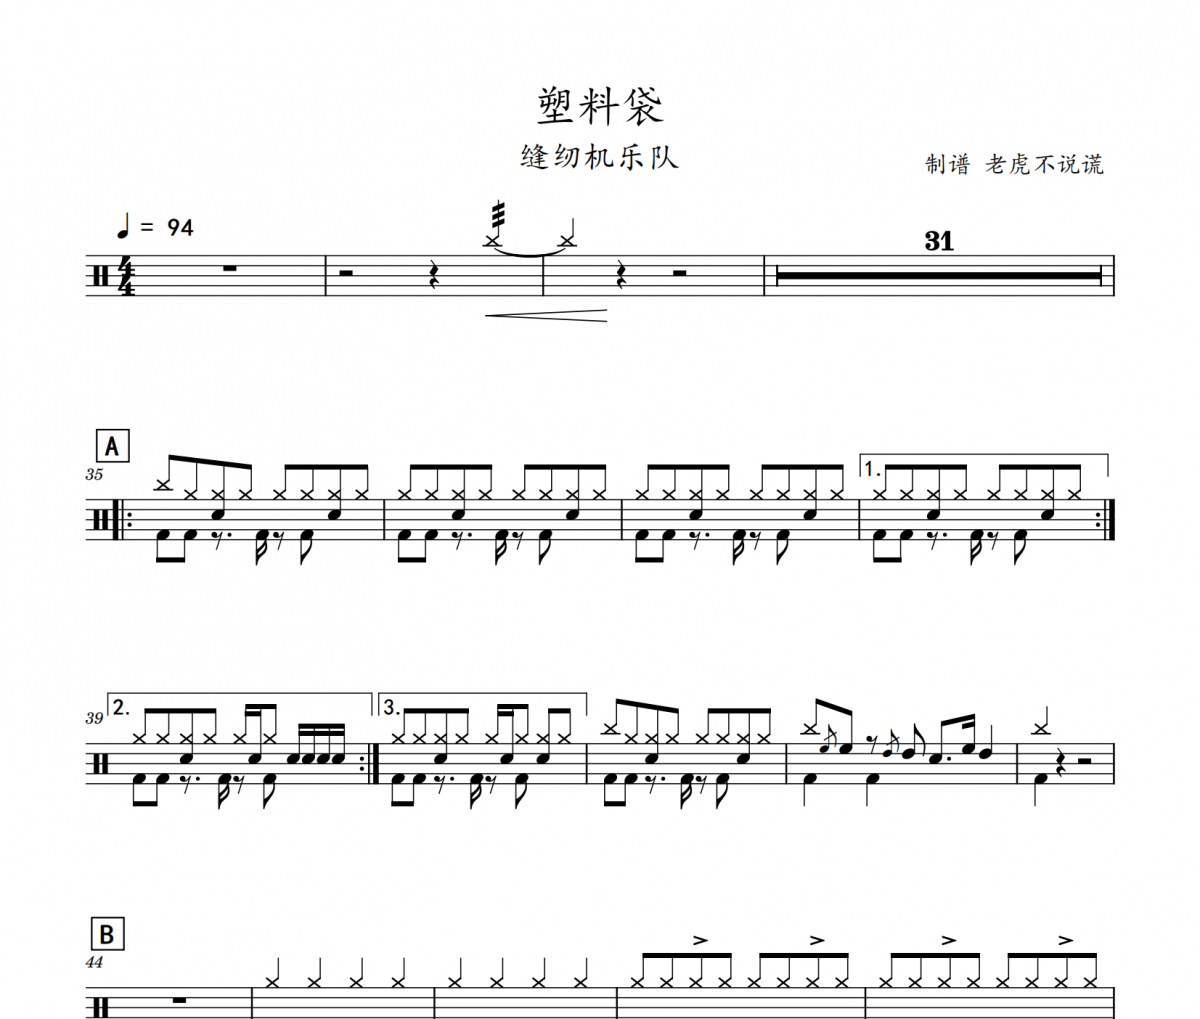 缝纫机乐队【塑料袋钢琴谱】_在线免费打印下载-爱弹琴乐谱网